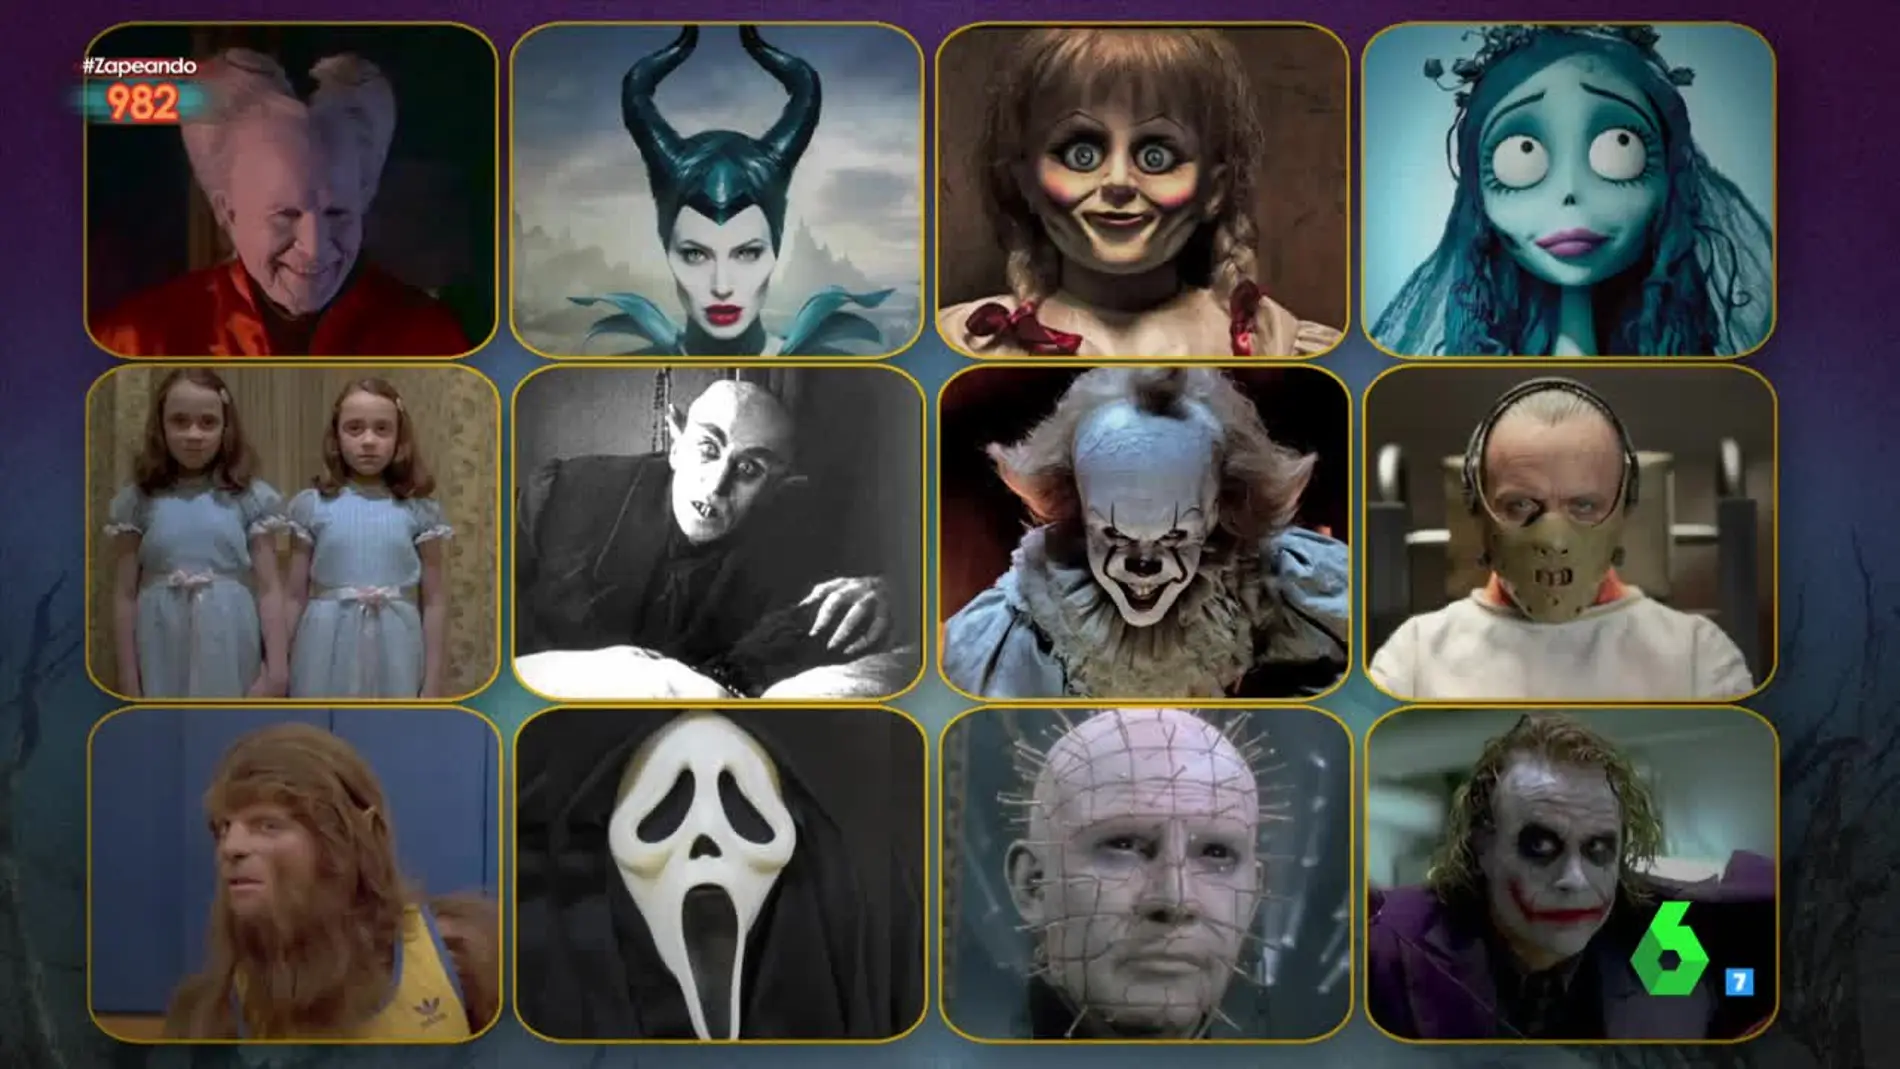 Seis de estos personajes estarán en Zapeando por Halloween